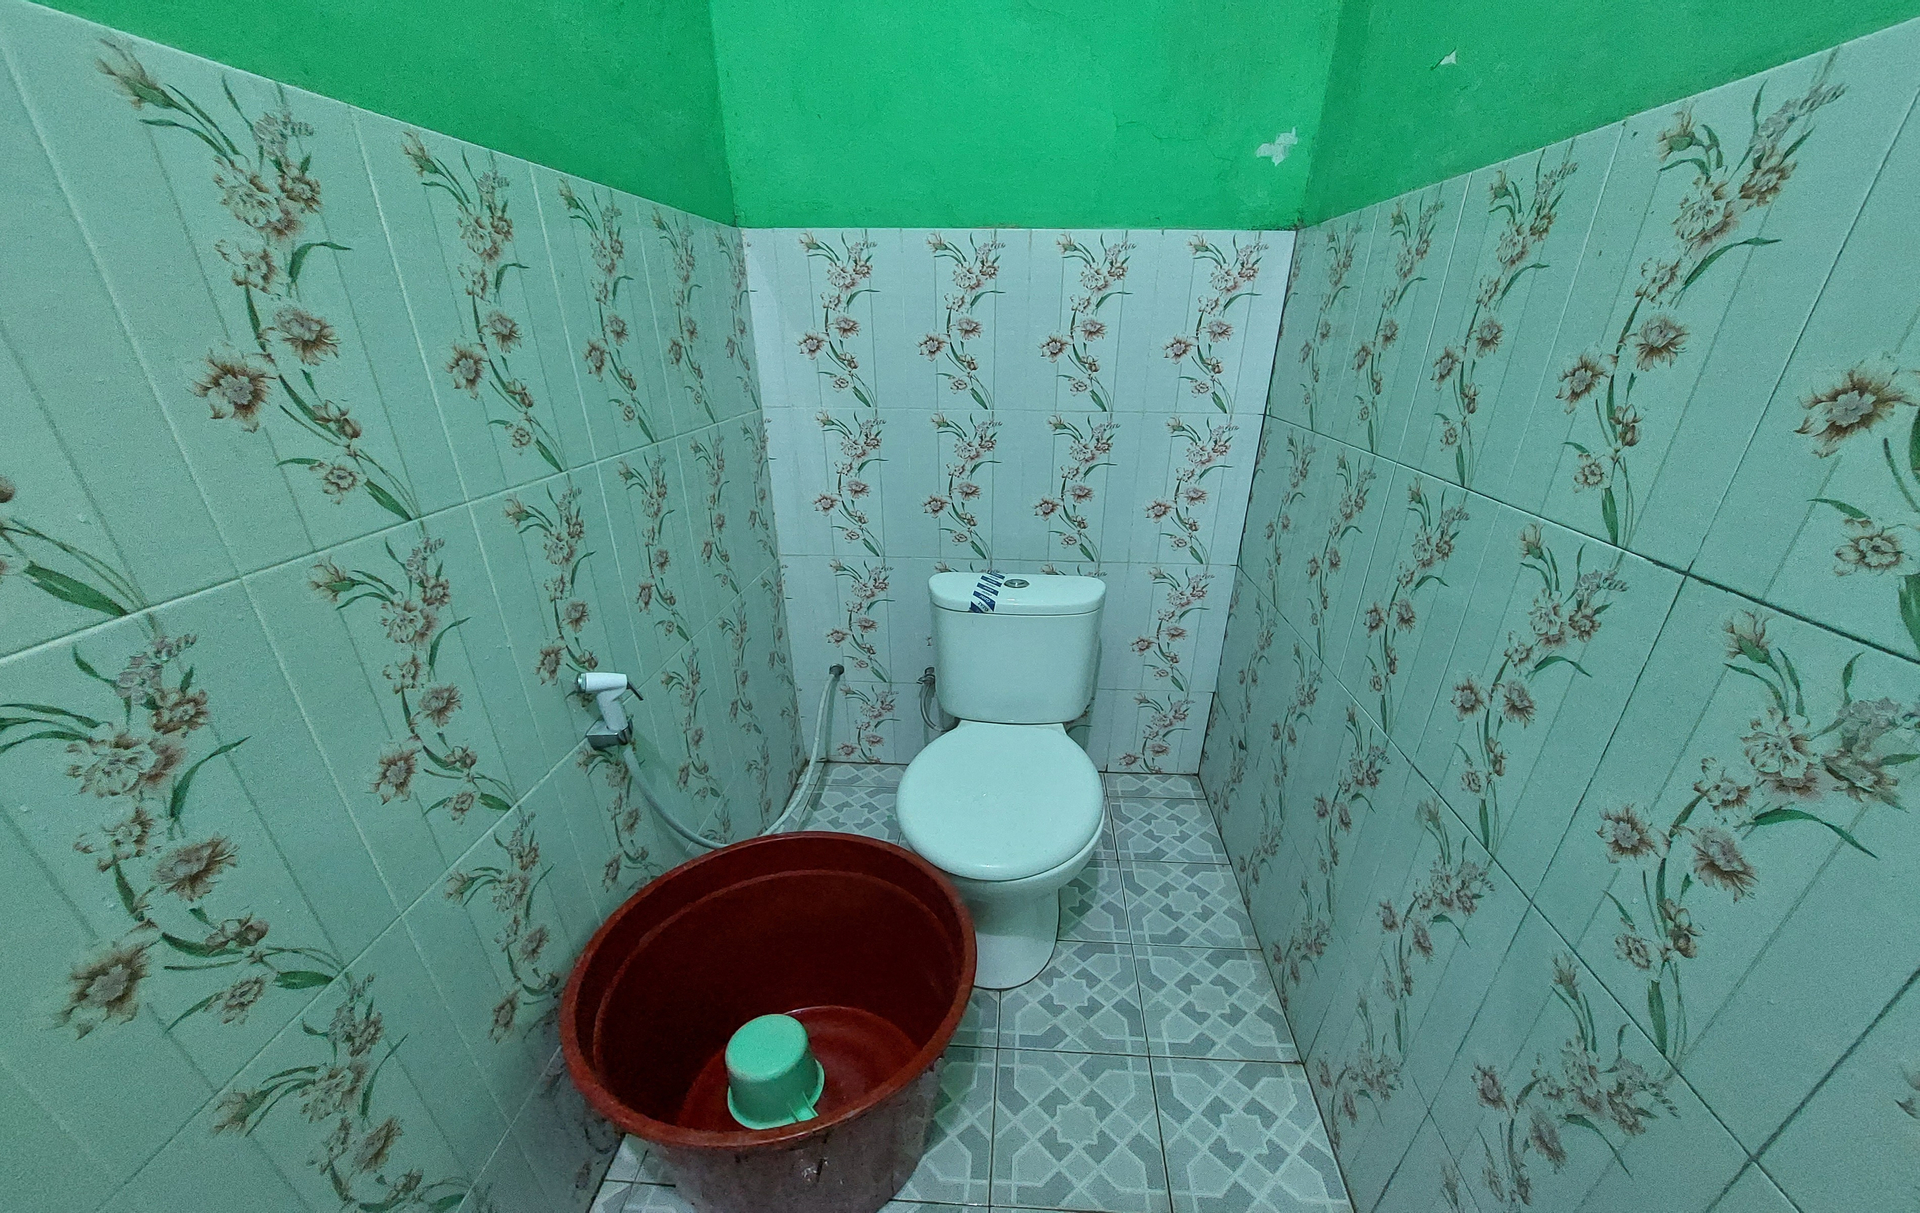 Bathroom 13